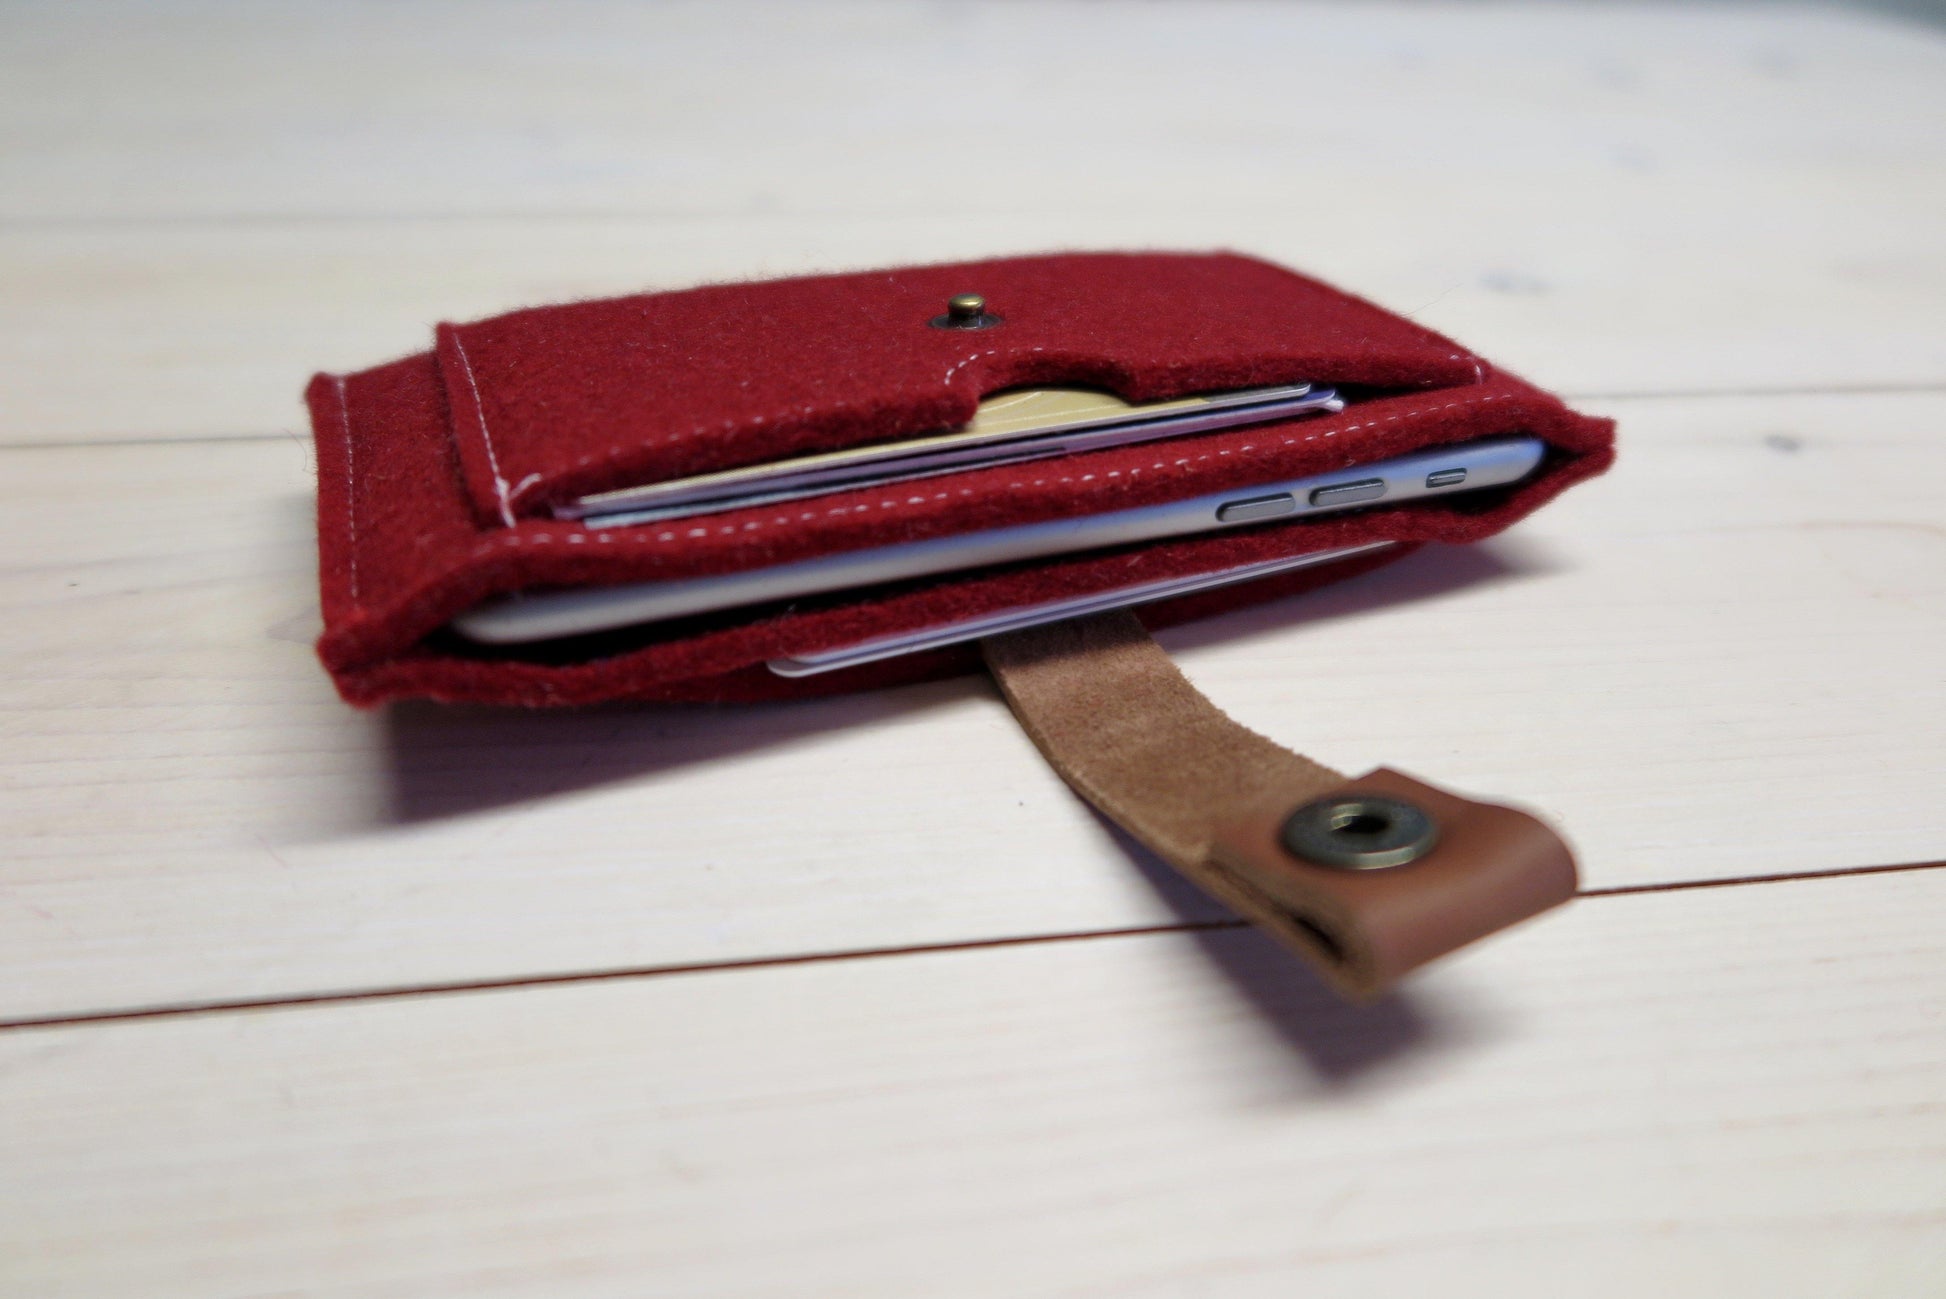 Fairphone vilten wallet - felt wallet - Westerman Bags vilten tassen en hoezen. Dutch Design.